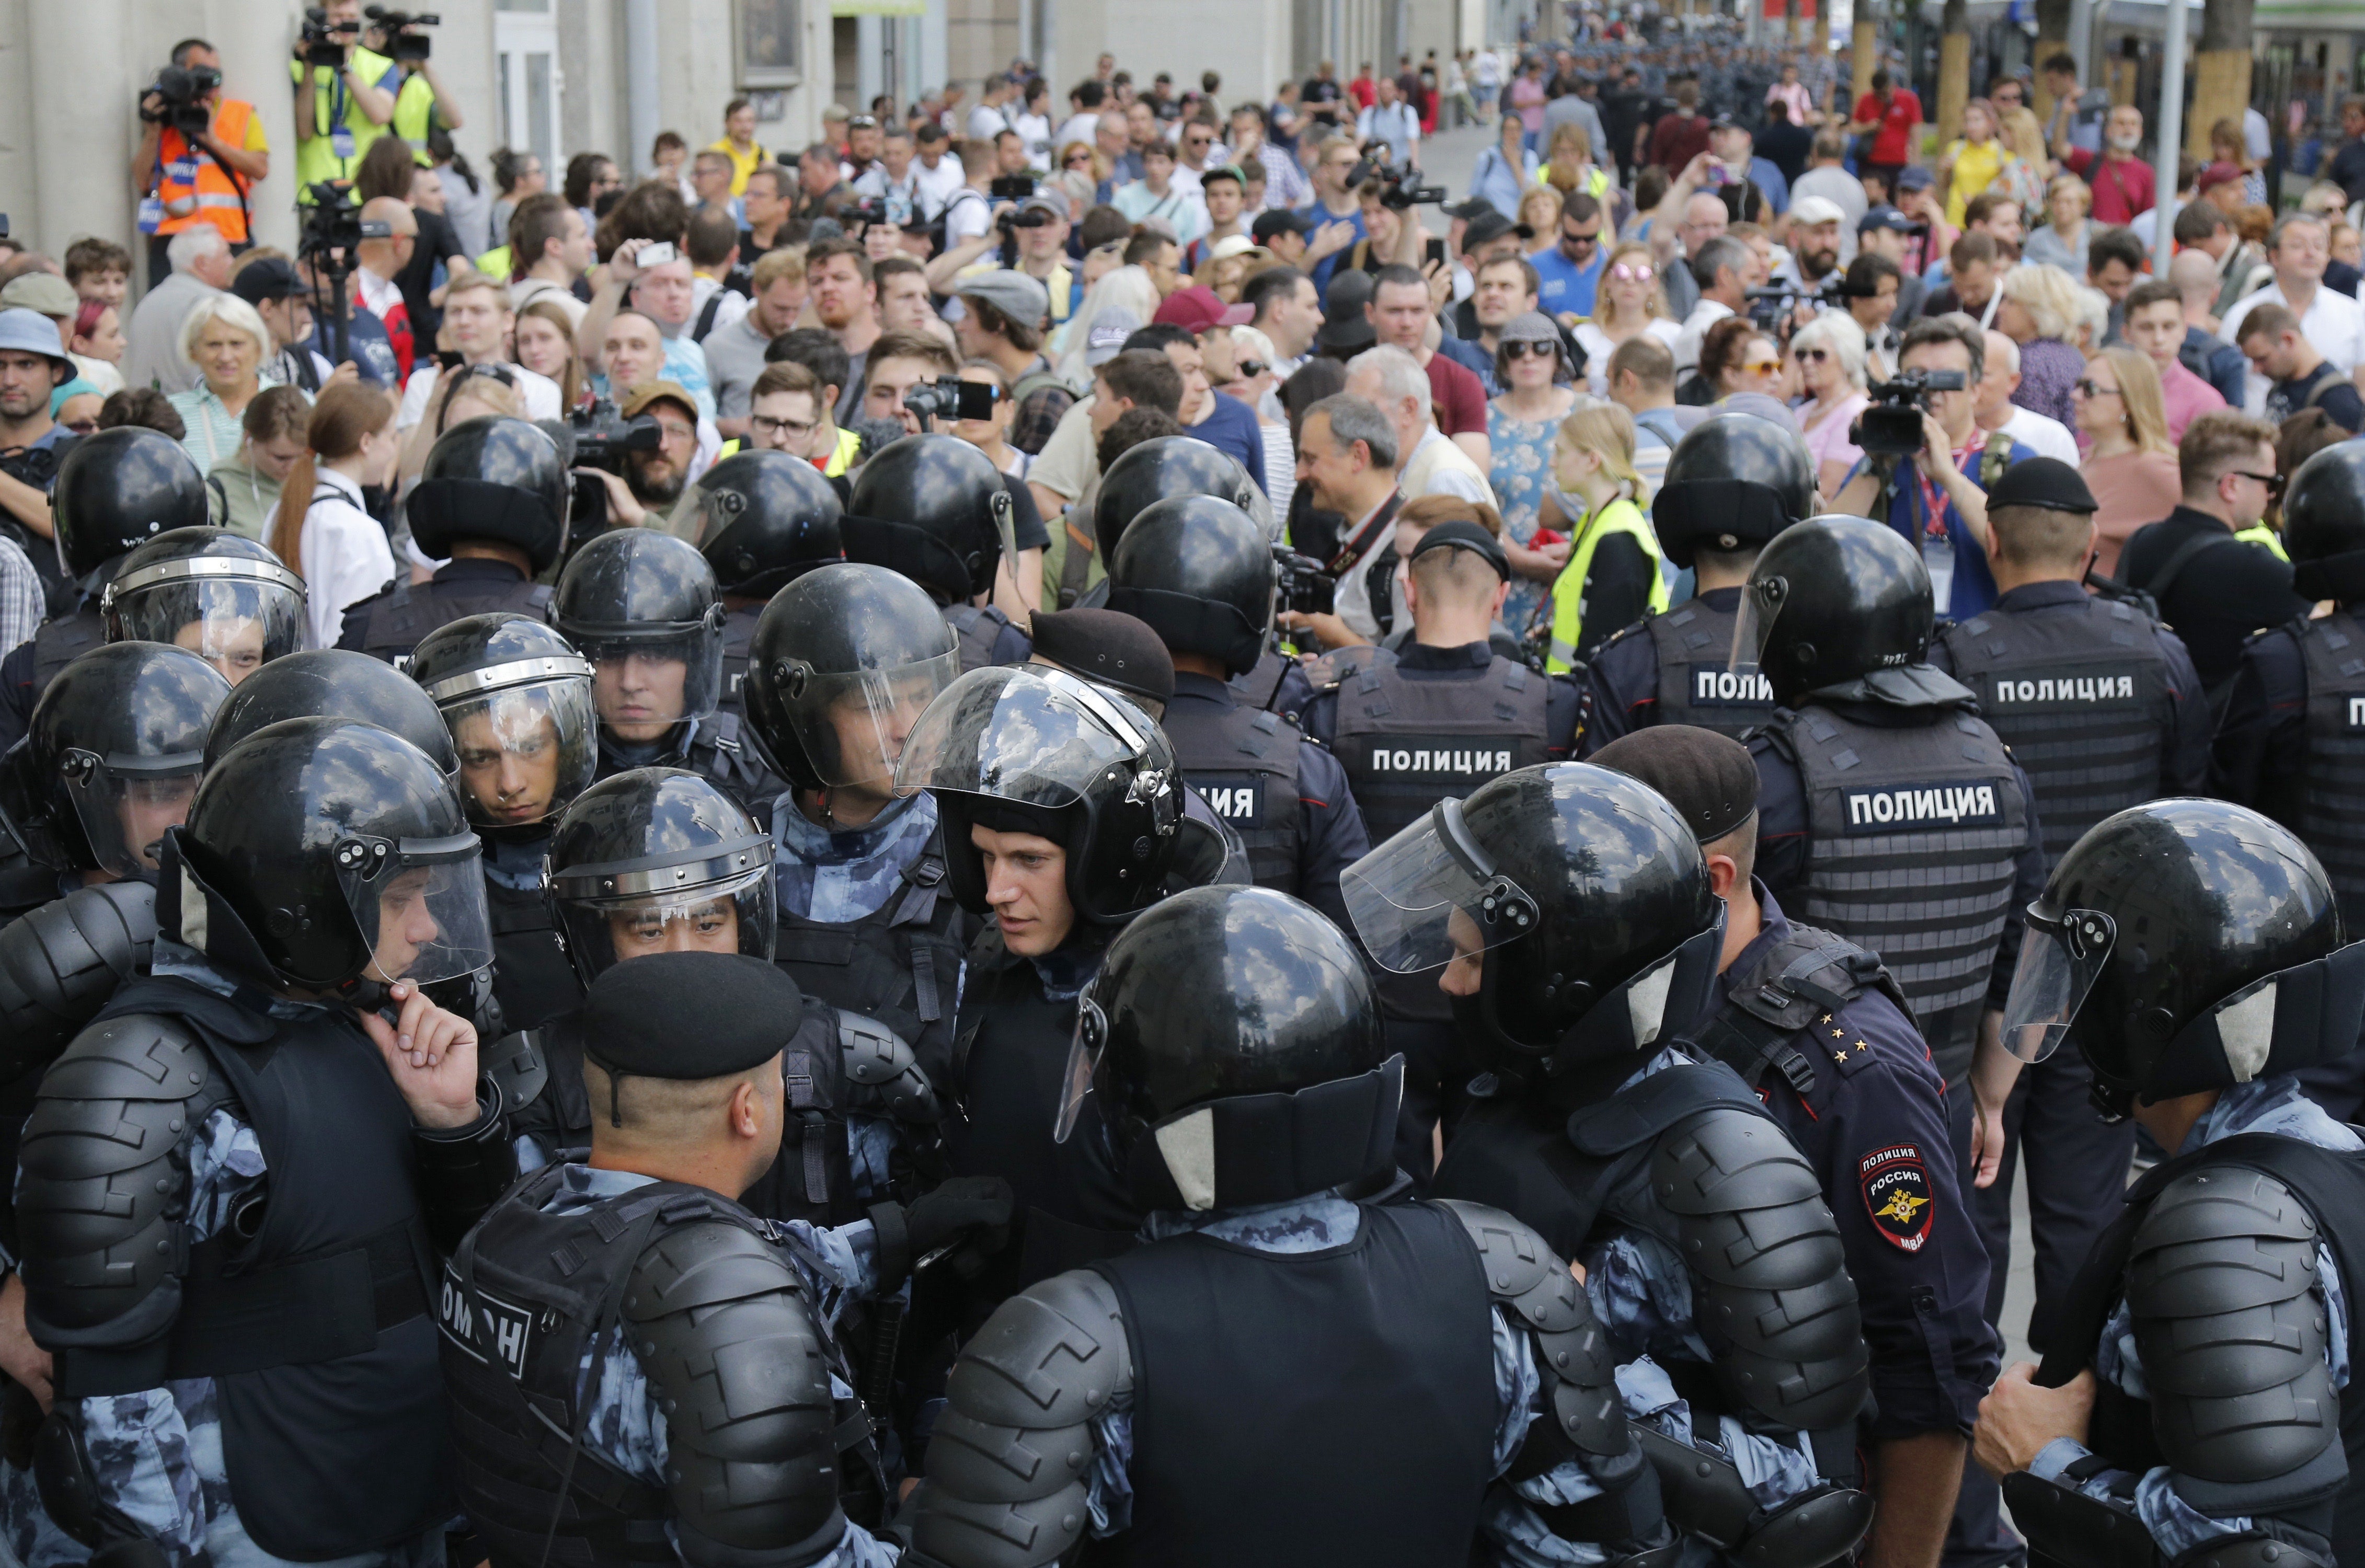 C митинг. Полиция в Москве разгоняет демонстрантов. Митинг в Москве 27 июля 2019 ОМОН. Толпа полиции.